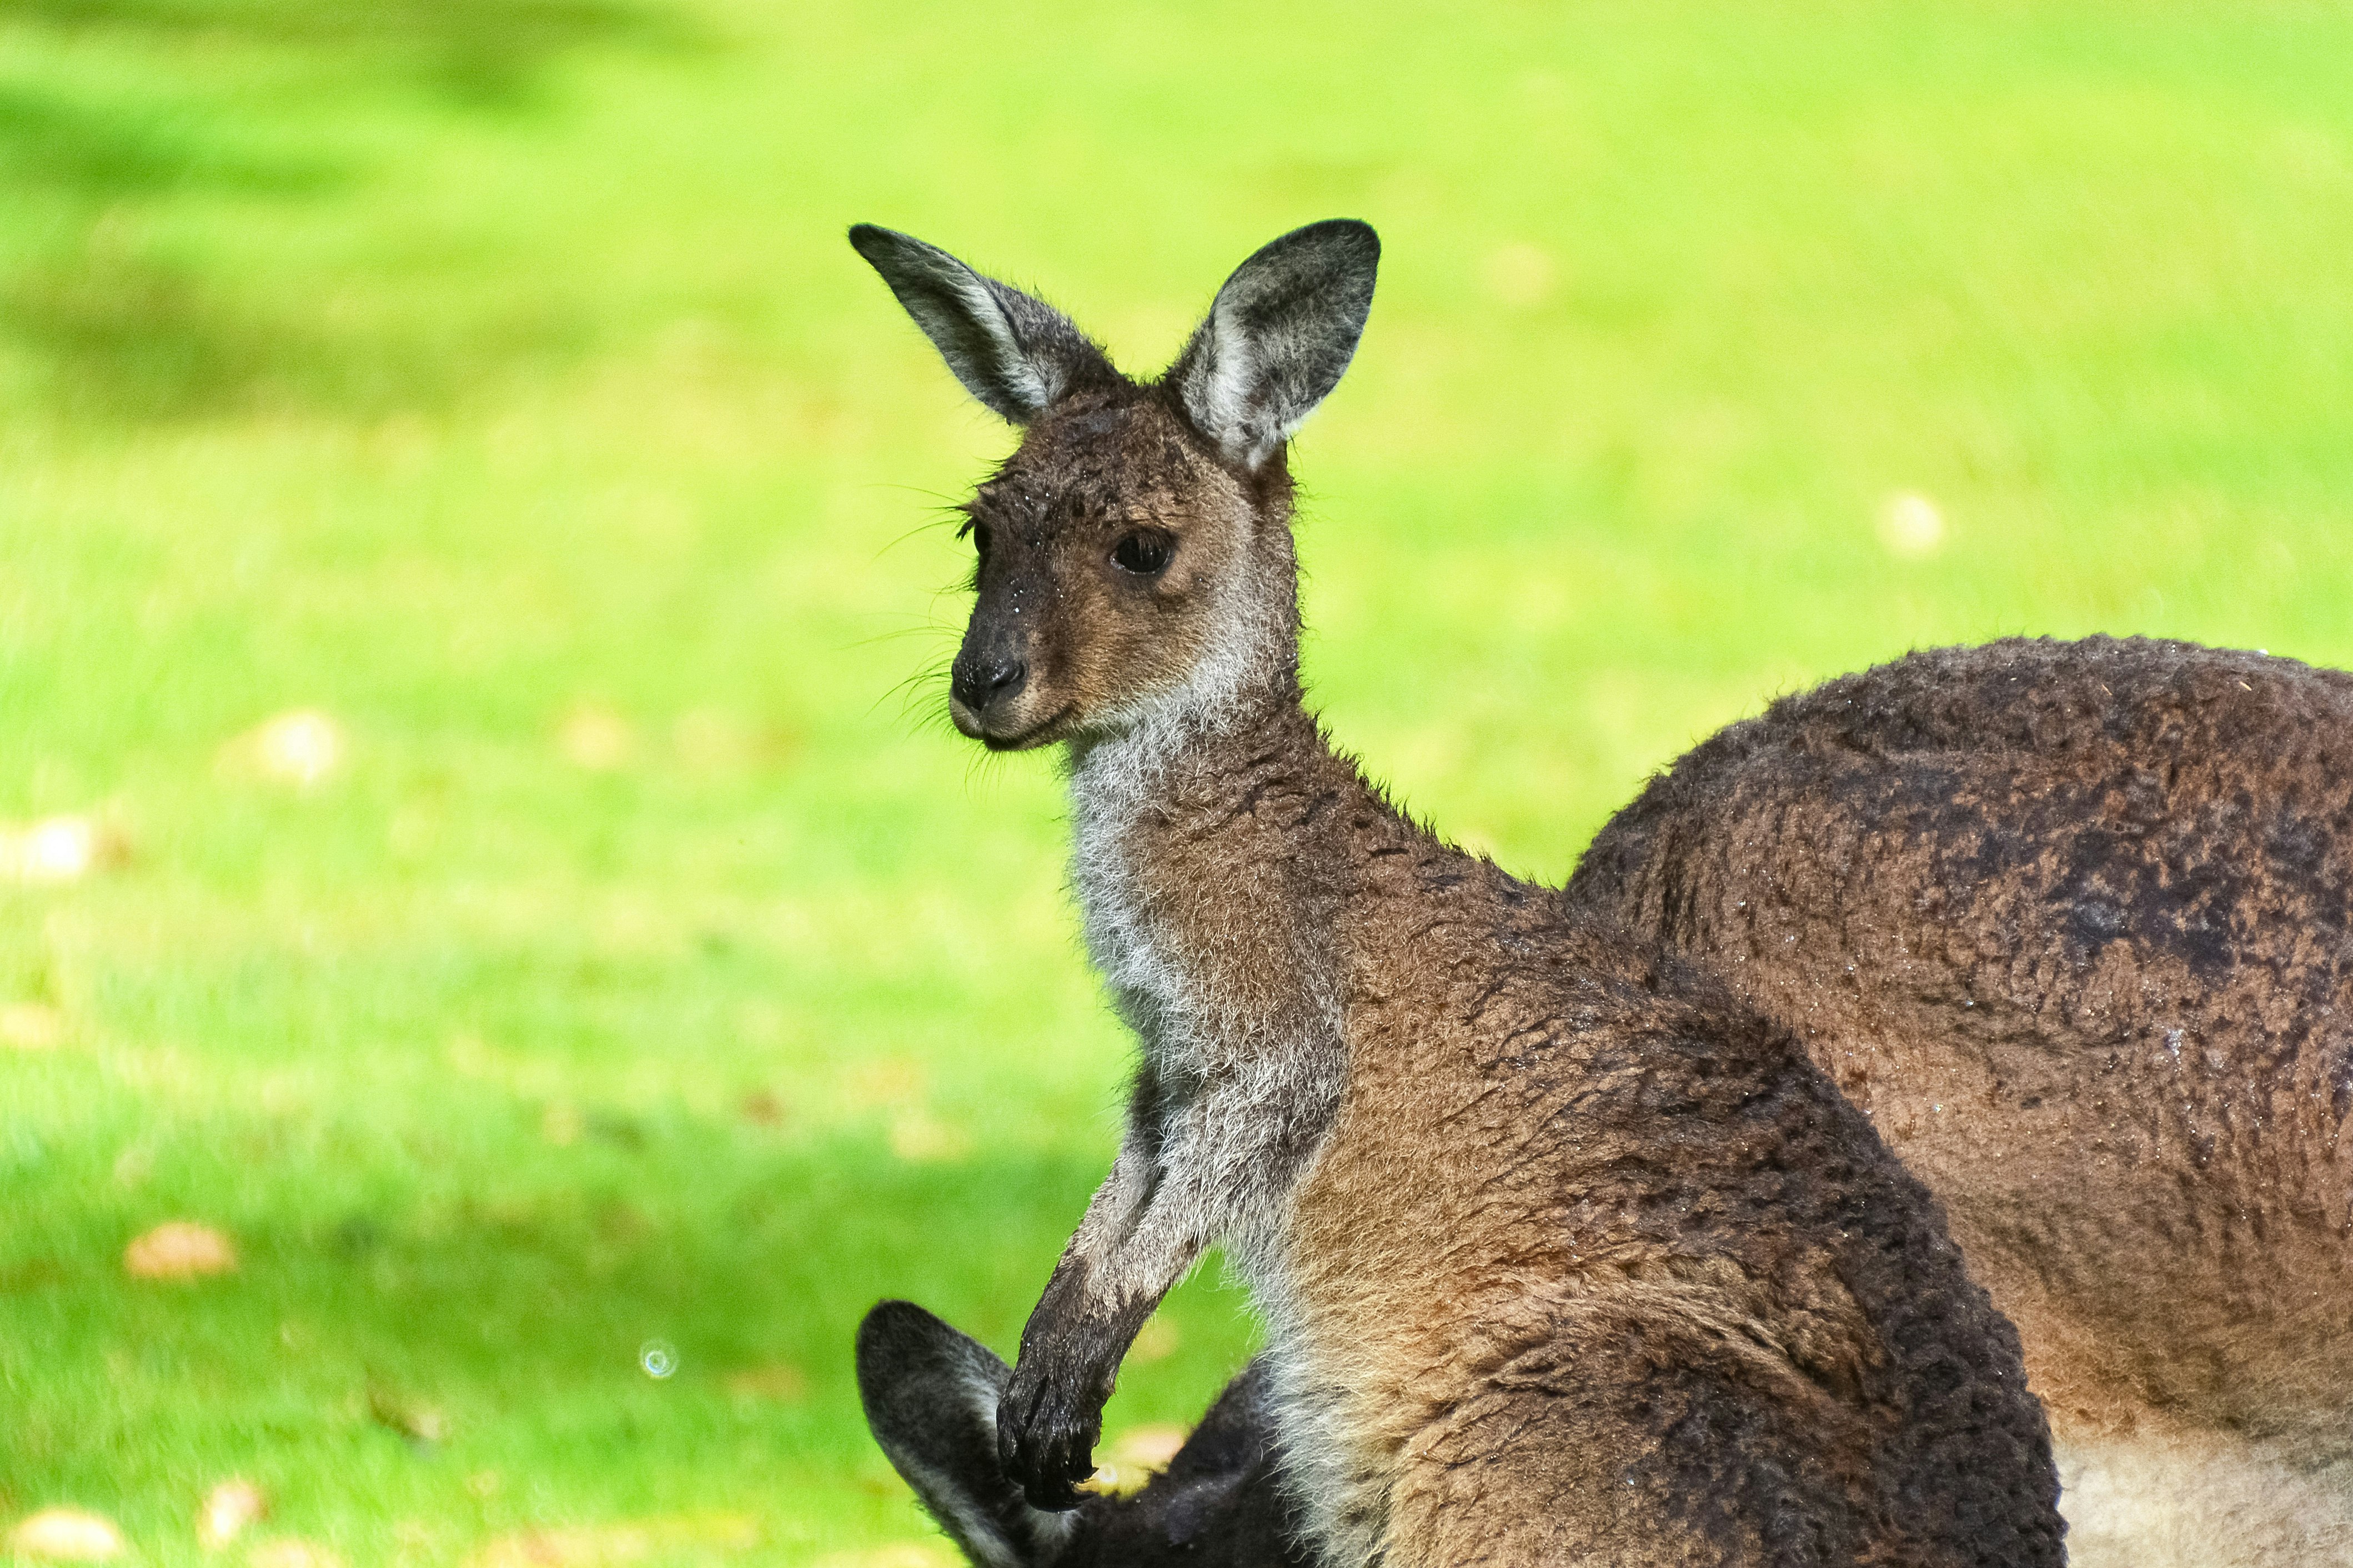 brown kangaroo on green grass field during daytime